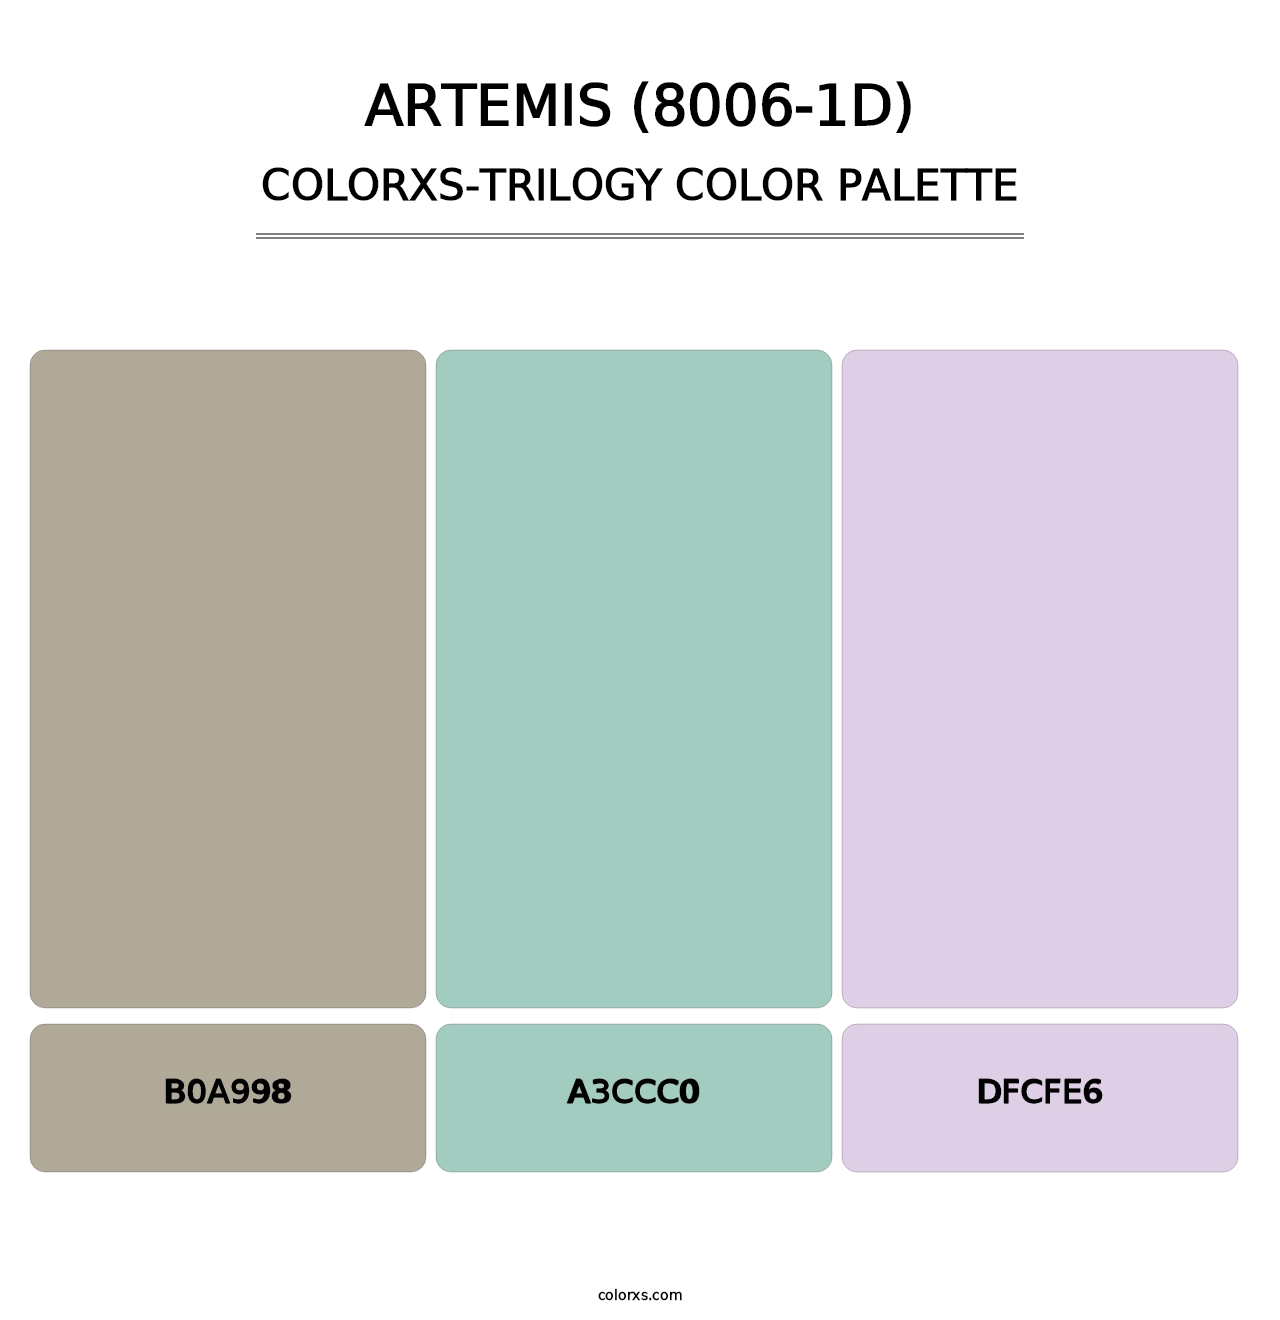 Artemis (8006-1D) - Colorxs Trilogy Palette